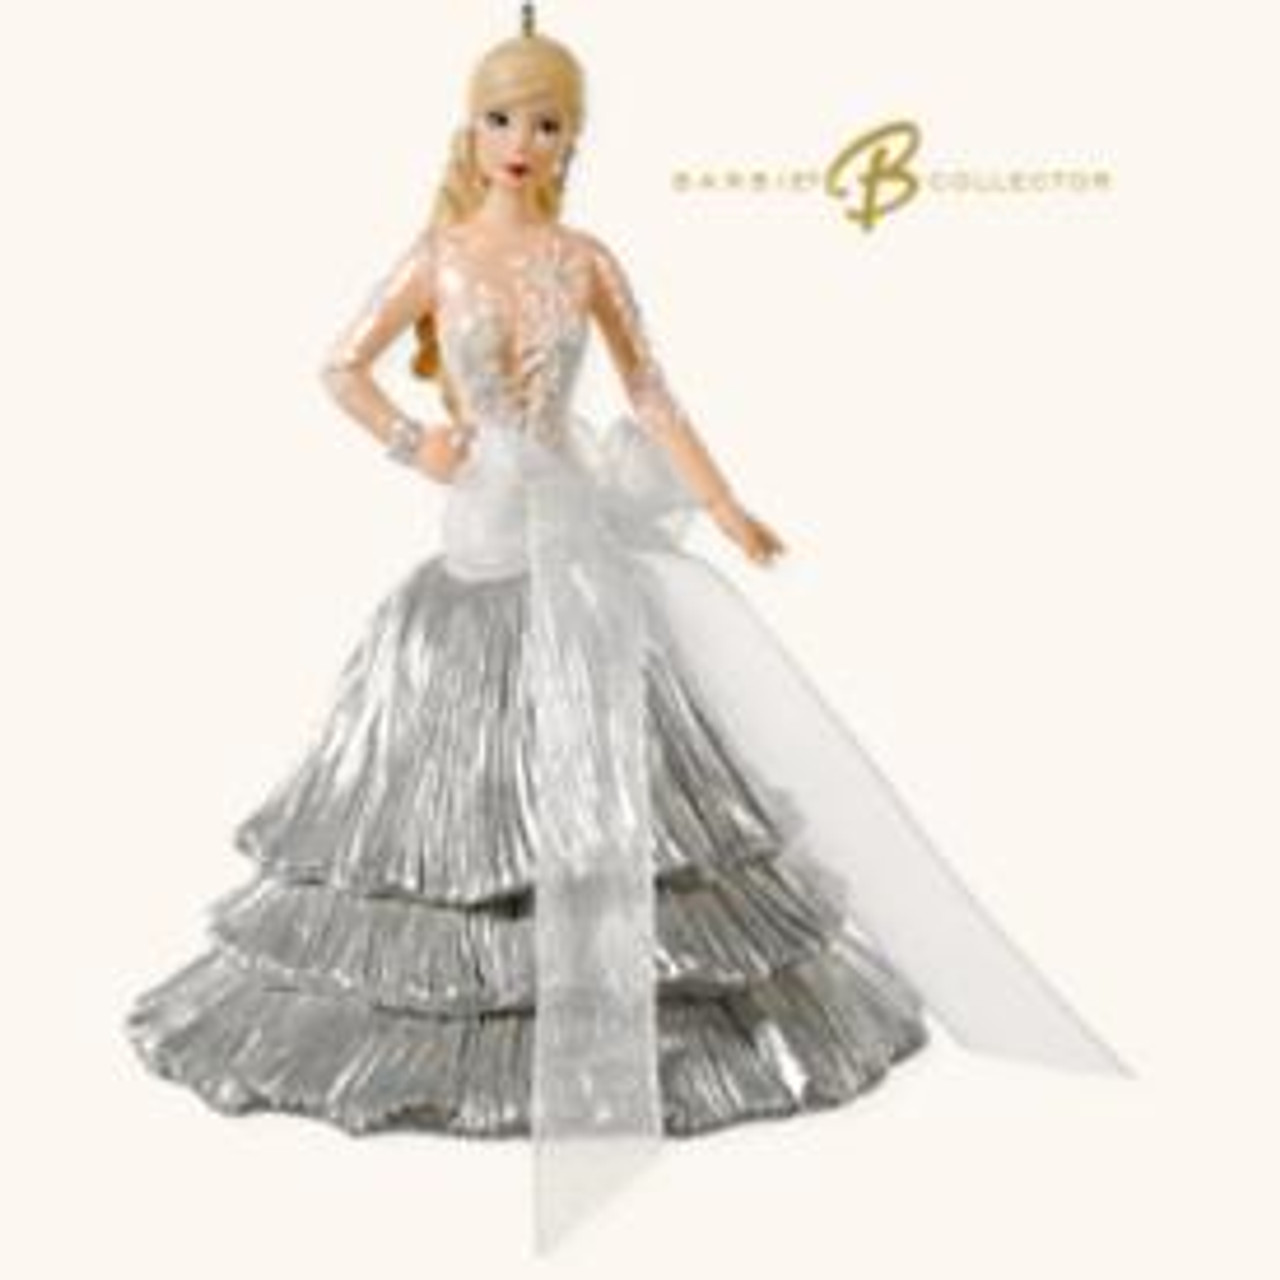 2008 Barbie - Celebration #9 Ornament | Shop